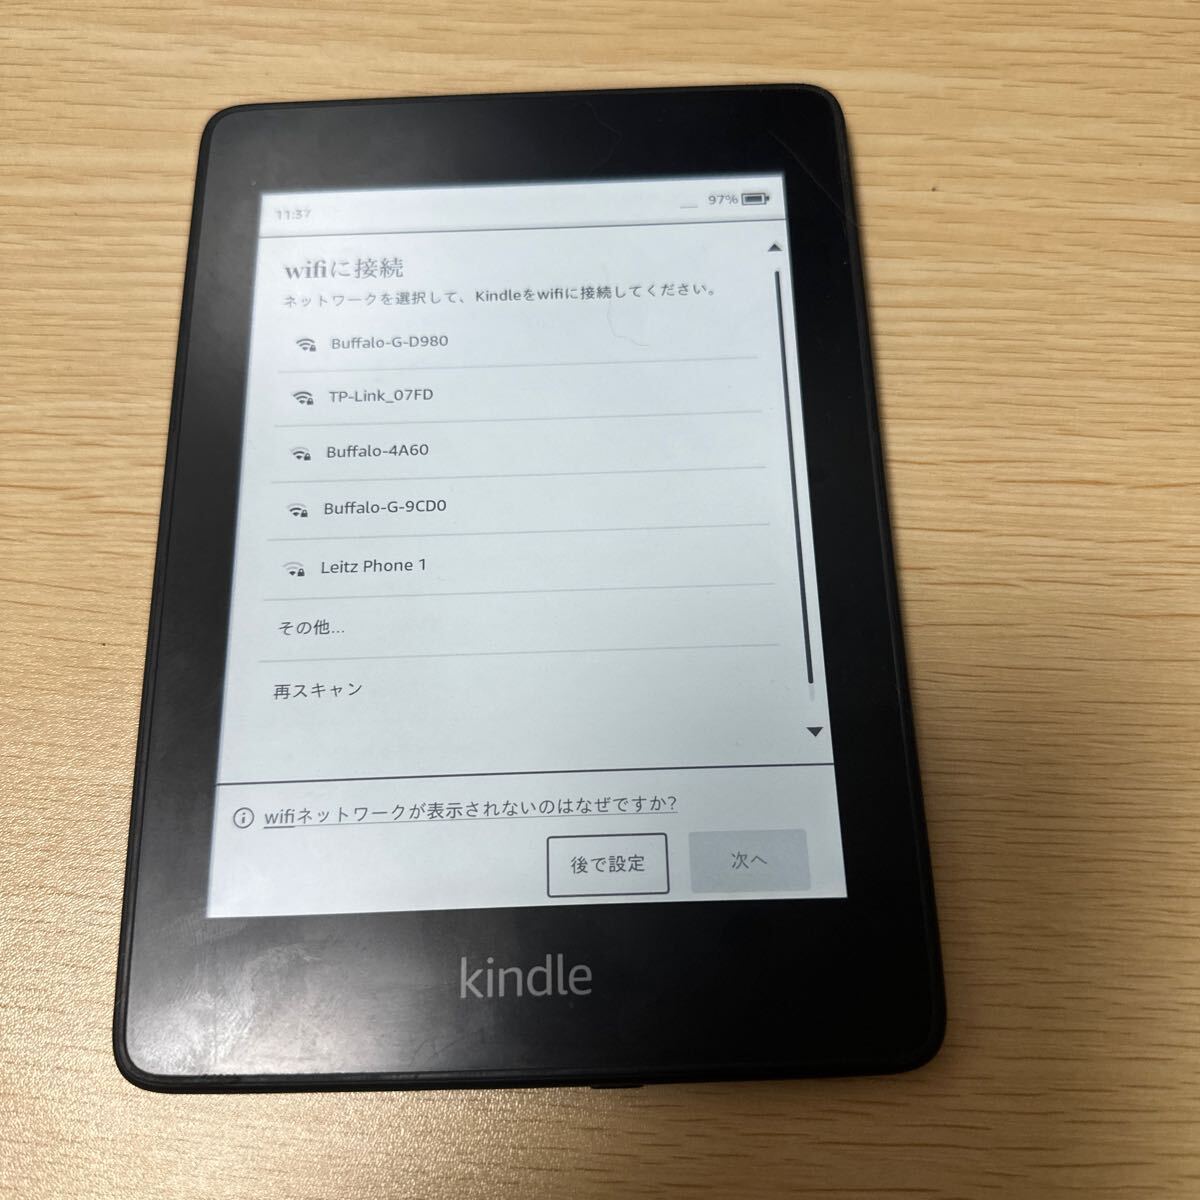 Kindle Paperwhite no. 10 поколение электронная книга корпус только реклама нет 